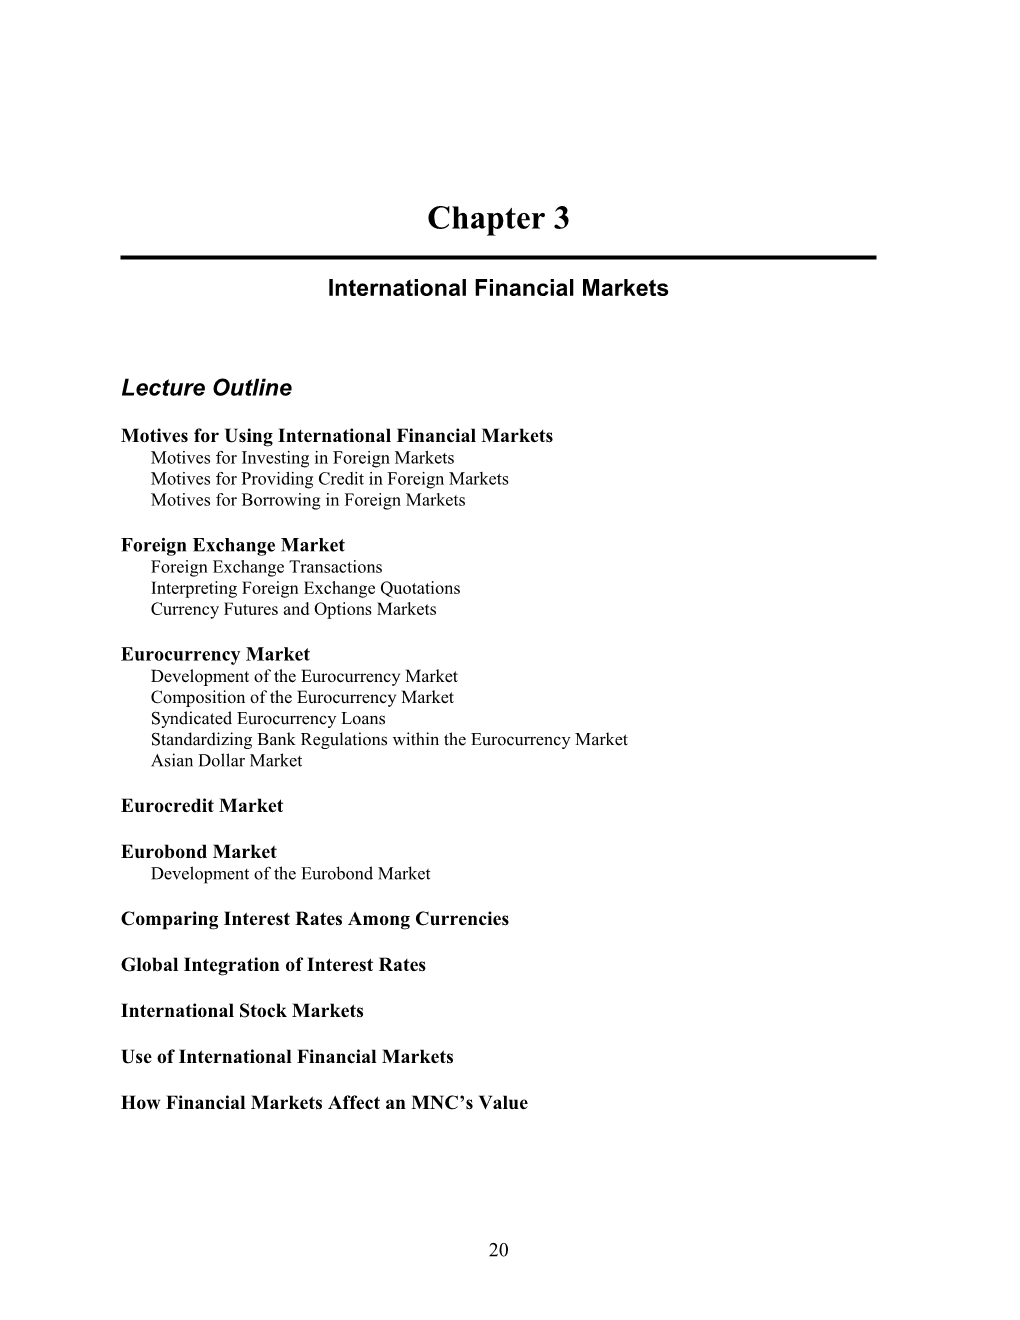 Chapter 3: International Financial Markets 1